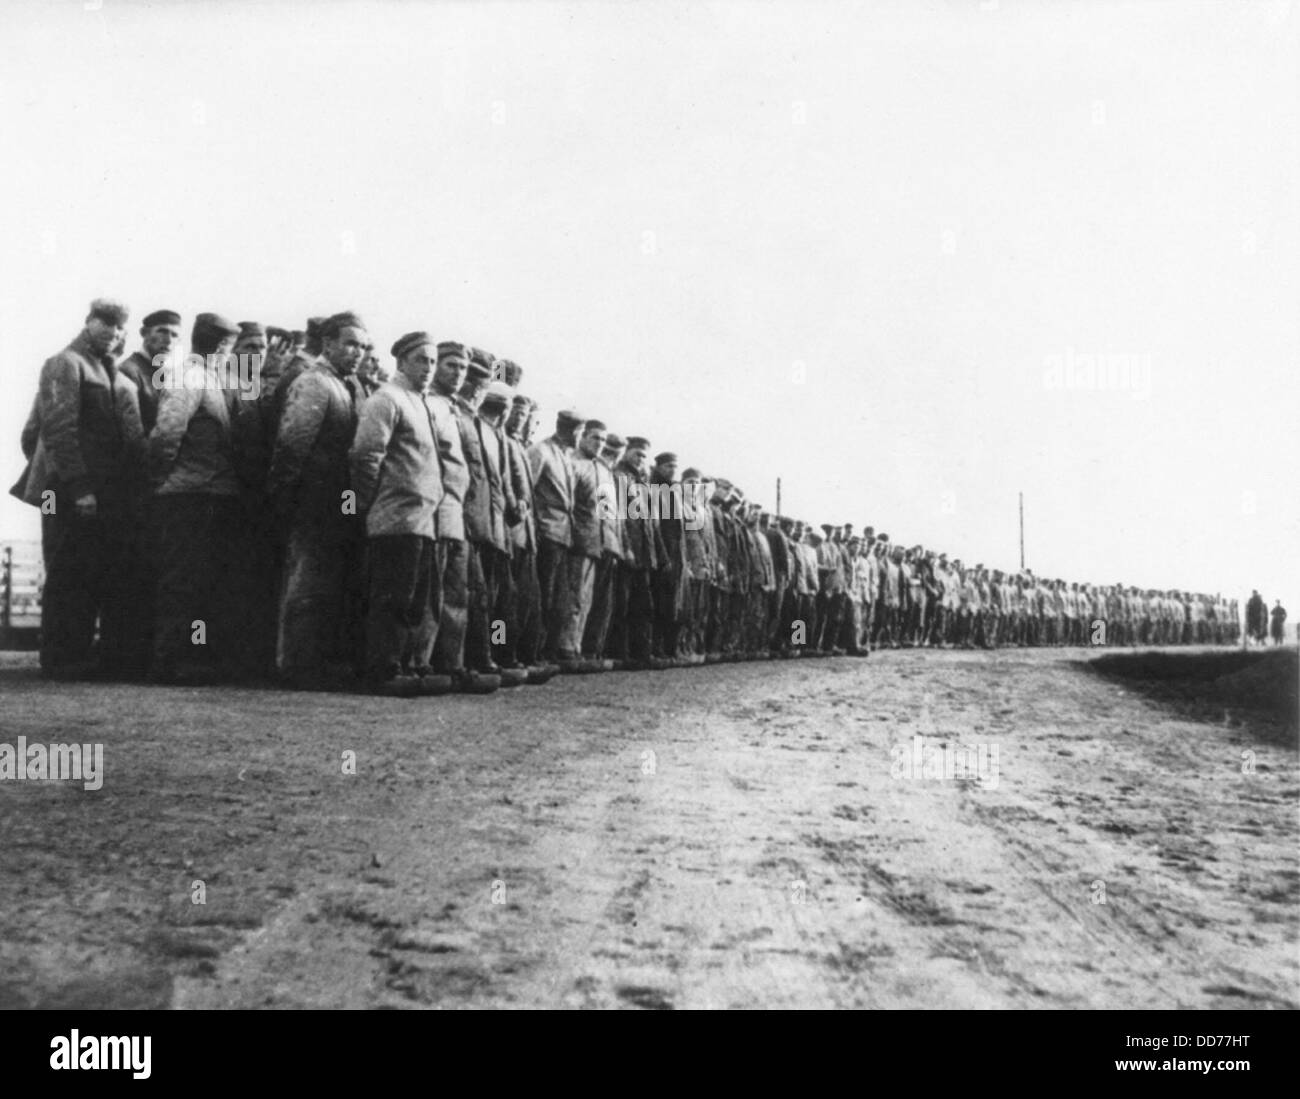 Deutsche politische Häftlinge in ein sibirisches Arbeitslager im Jahr 1935. Hunderte von Gefangenen stehen in langen Reihen in einem Konzentrationslager in der Stockfoto